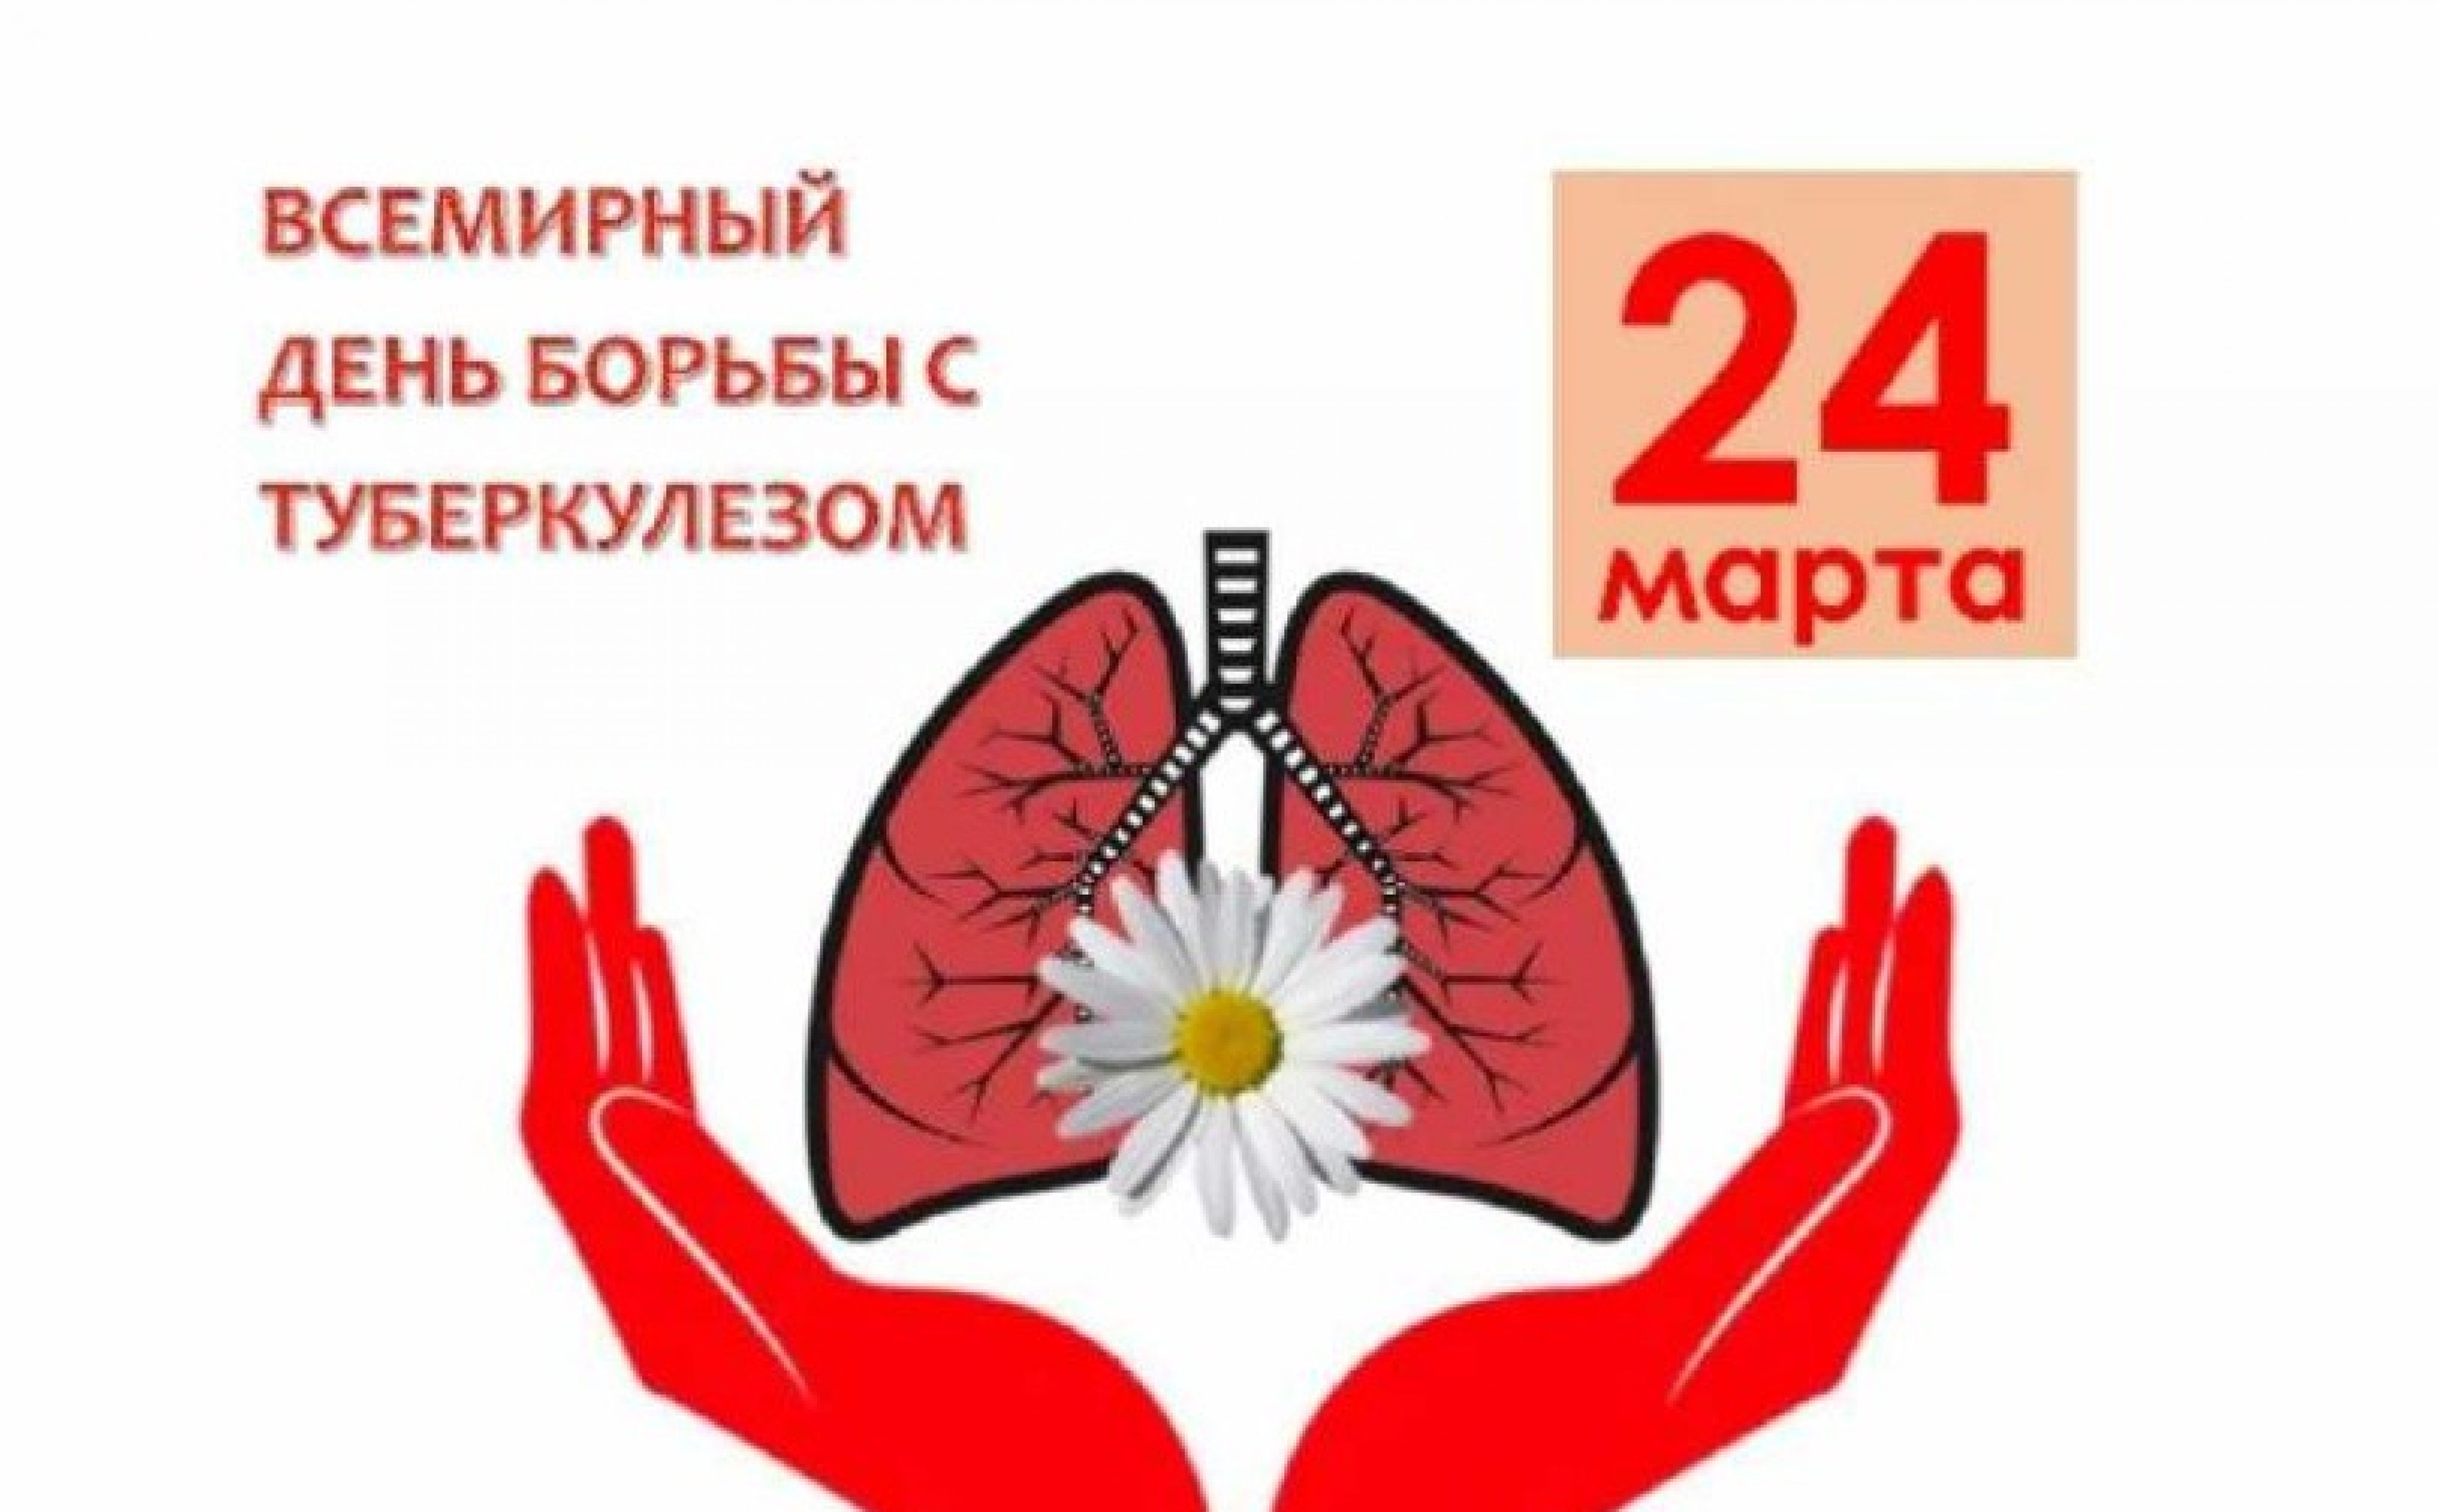 Всемирный день борьбы с туберкулезом.